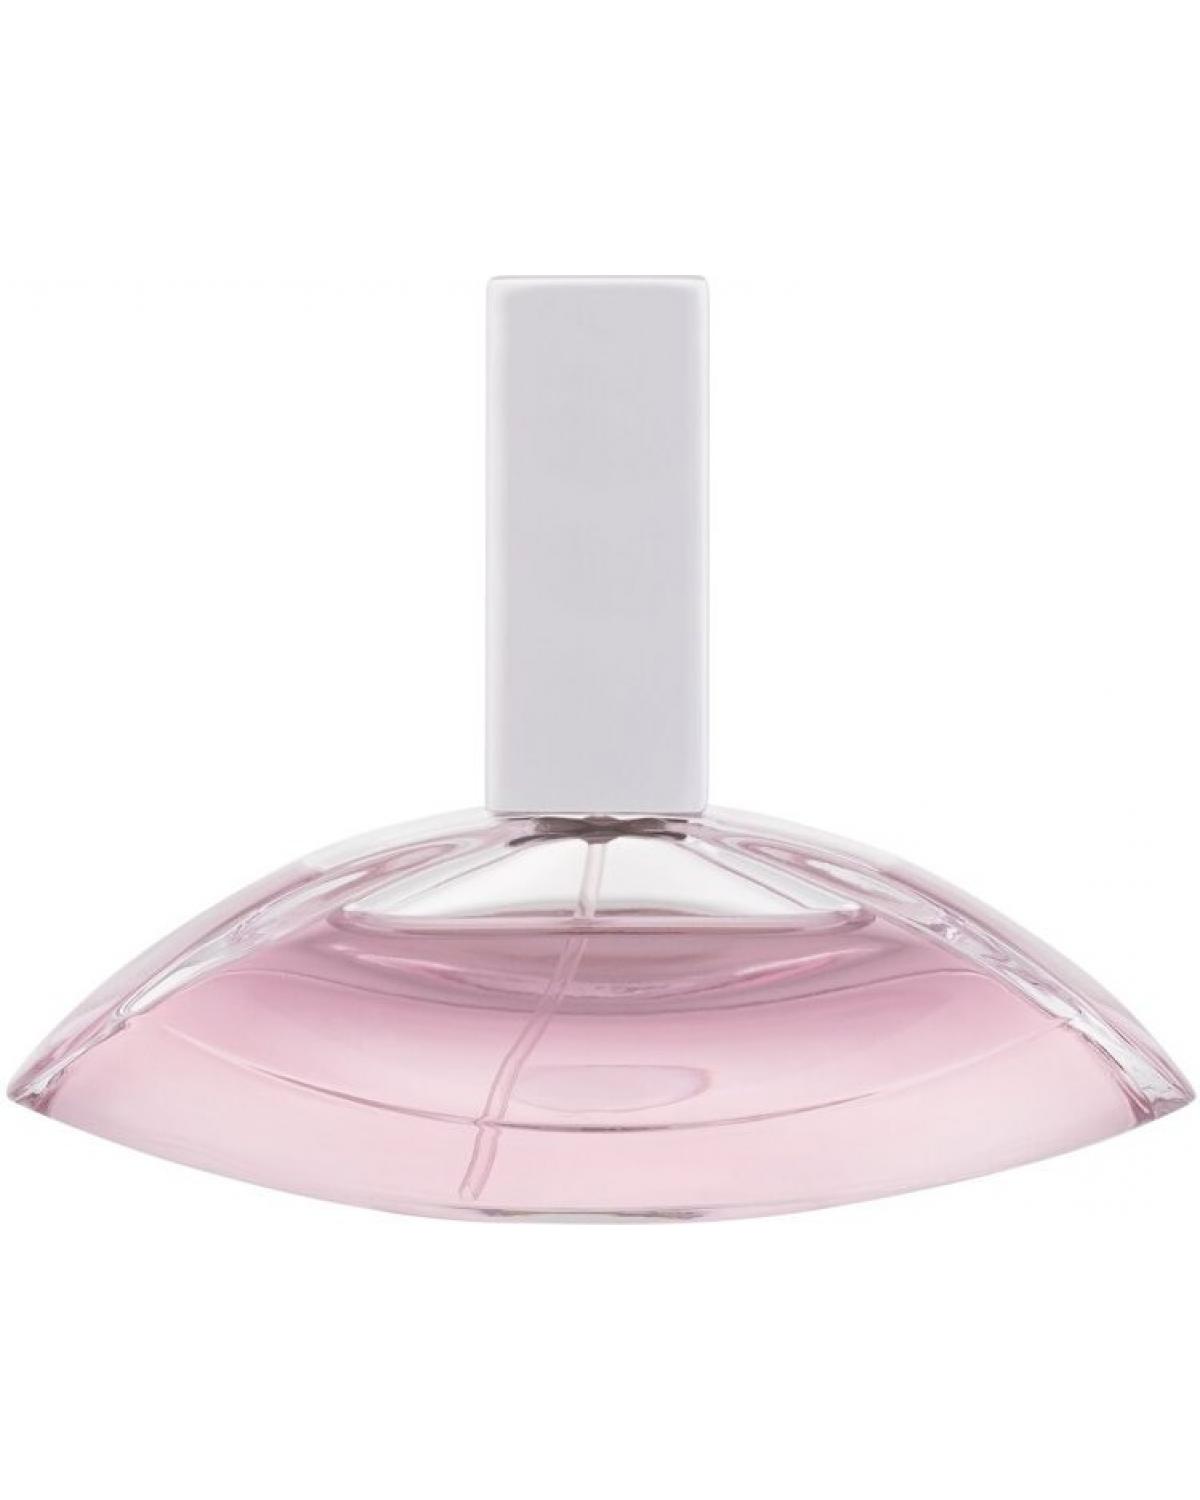 Euphoria For Women Calvin Klein - Perfume Feminino - Eau de Toilette - 30ml